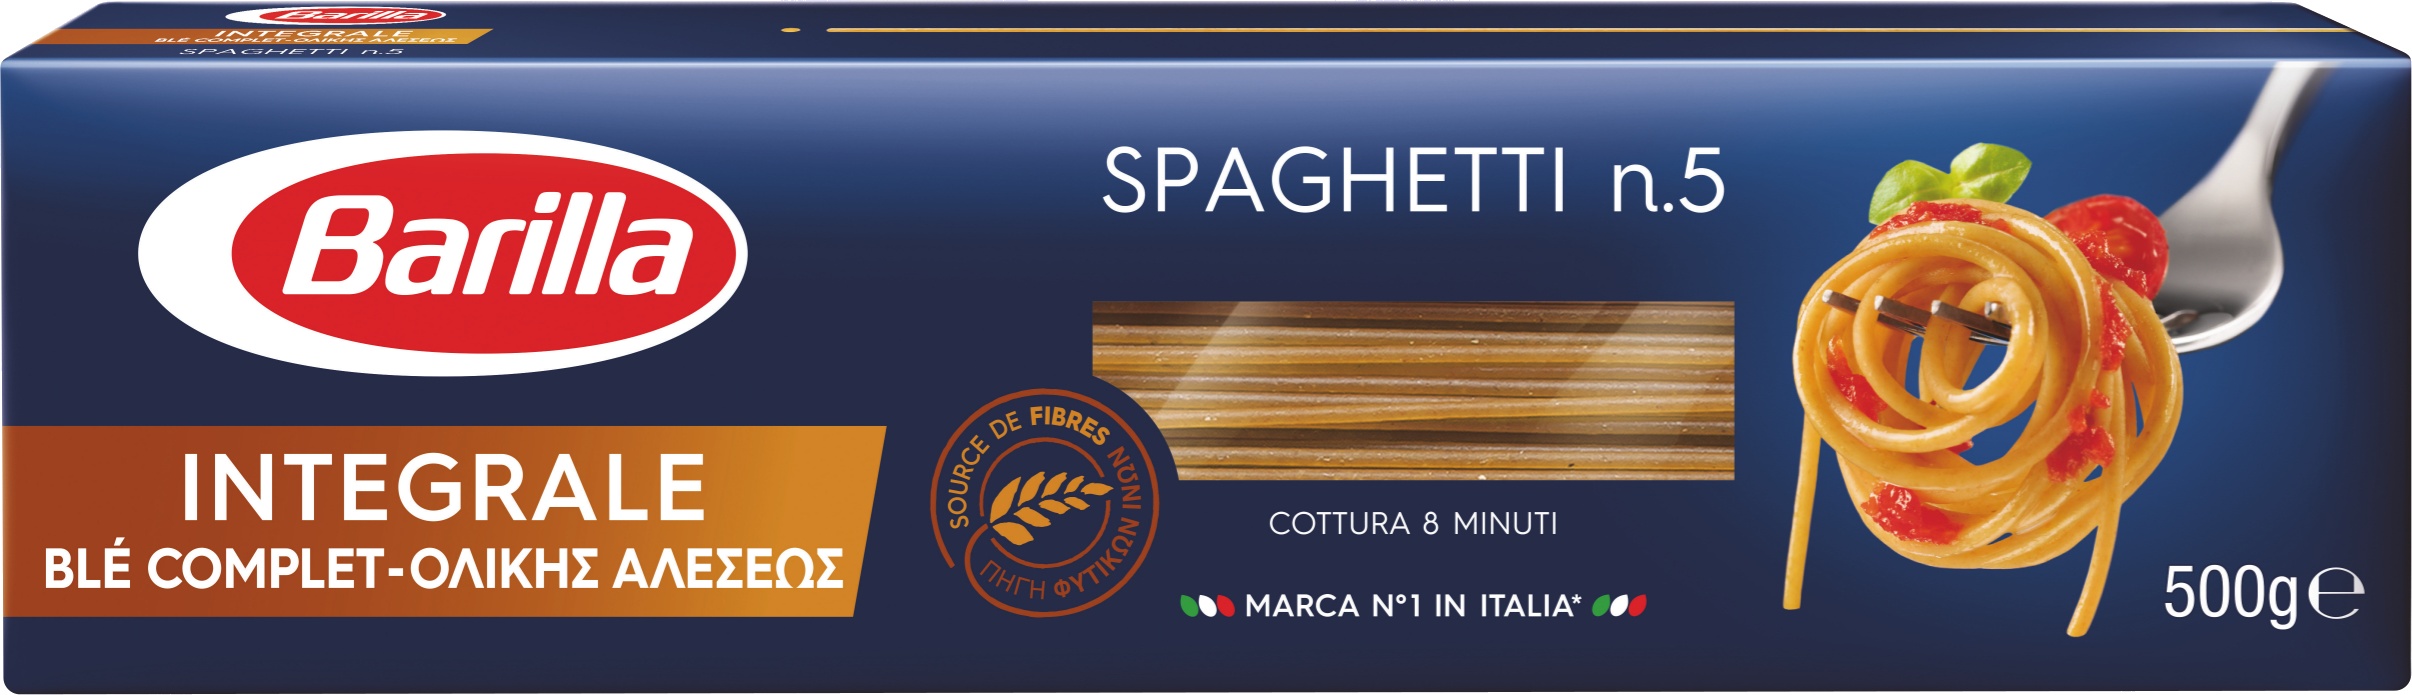 Slika za Testenina integralna spaghetti Barilla 500g